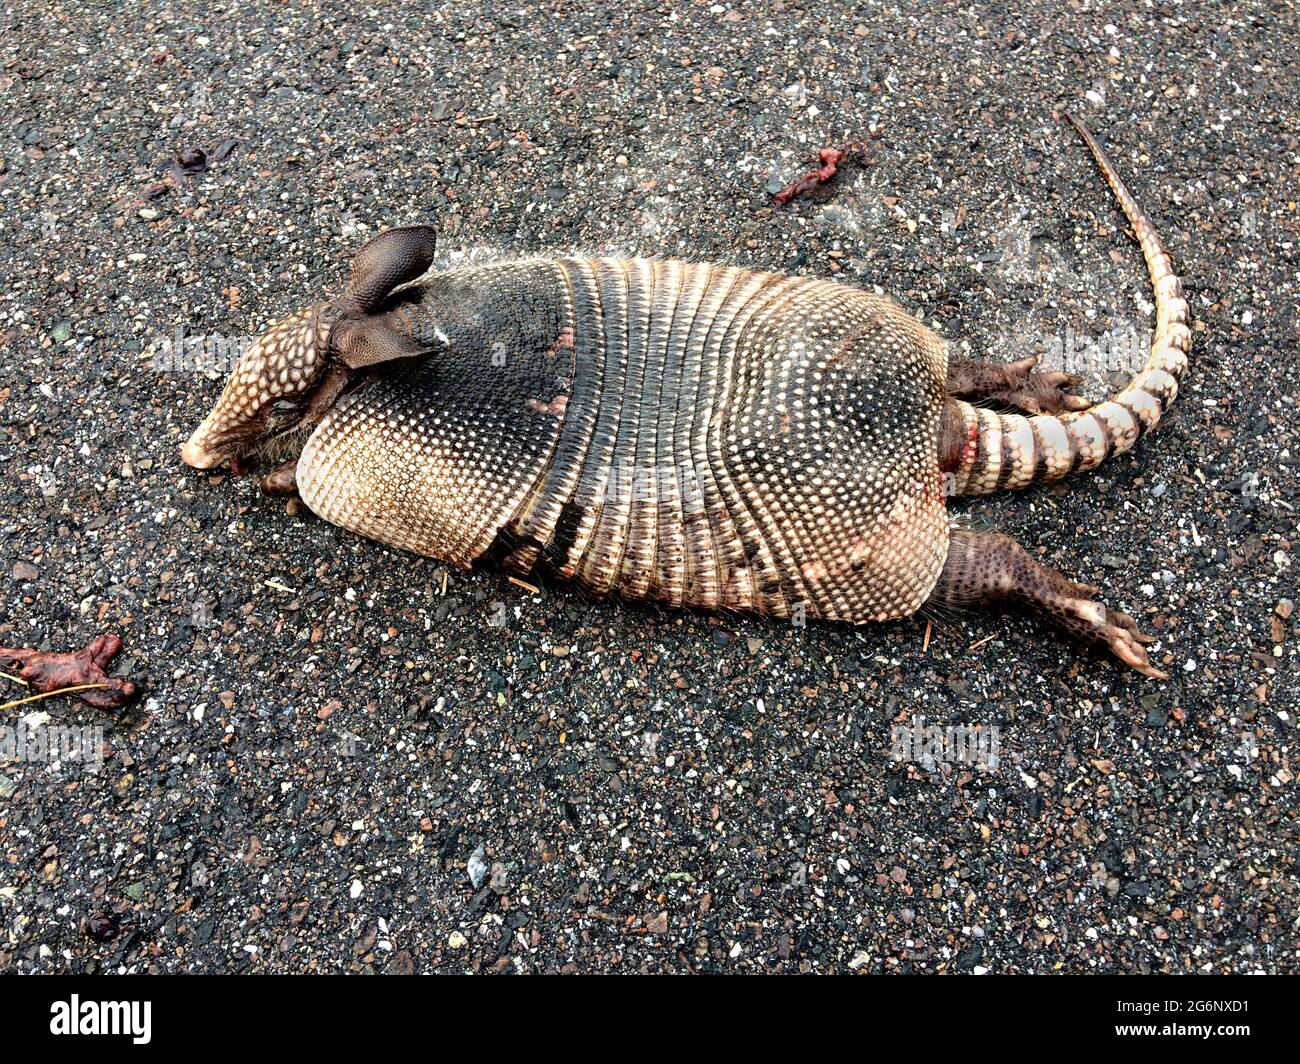 Dieser junge neunbanderige Gürteltier (Dasypus novemcinctus) liegt tot auf einer schwarzen Straße im Zentrum von Florida, USA. Das gepanzerte Säugetier war ein Opfer seiner eigenen ungewöhnlichen Eigenschaft, mehrere Füße in die Luft zu springen, wenn sie erschrocken oder erschreckt wurde -- die Kreatur wurde getötet, als sie in die Unterseite eines sich bewegenden Fahrzeugs sprang, das das kleine Gürteltier überspannt, um es nicht zu treffen. Von den 20 Armadillo-Arten, die in ganz Amerika existieren, ist das neunbanderige Armadillo das einzige, das in den USA gefunden wird. Dieses meist nachtaktive Tier ist in Florida mit Ausnahme der Everglades und der Keys üblich. Stockfoto